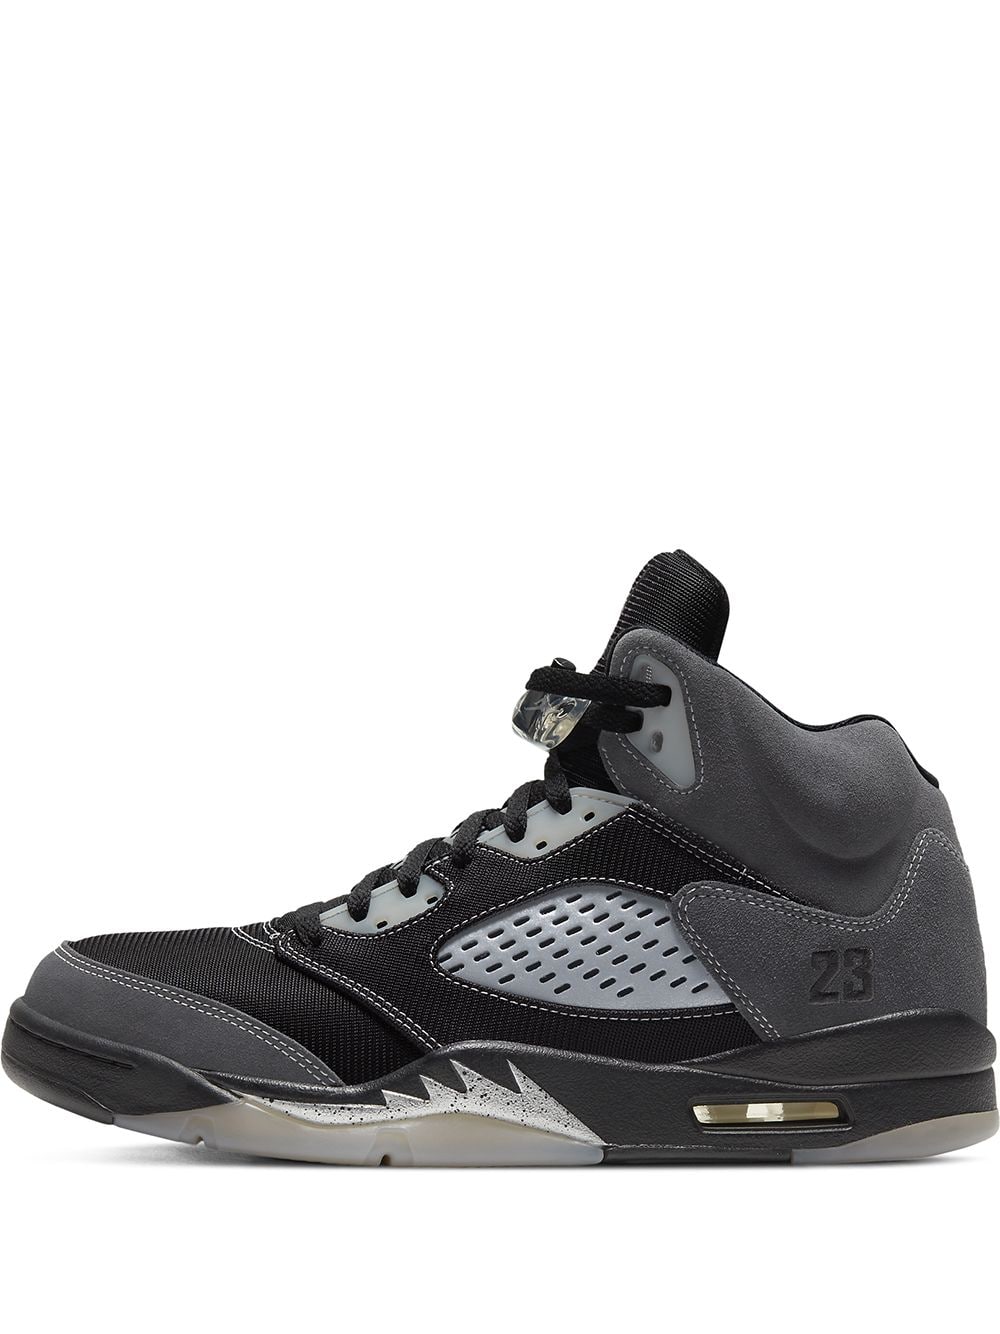 Chaussures et baskets homme Air Jordan 5 Retro Premium Black